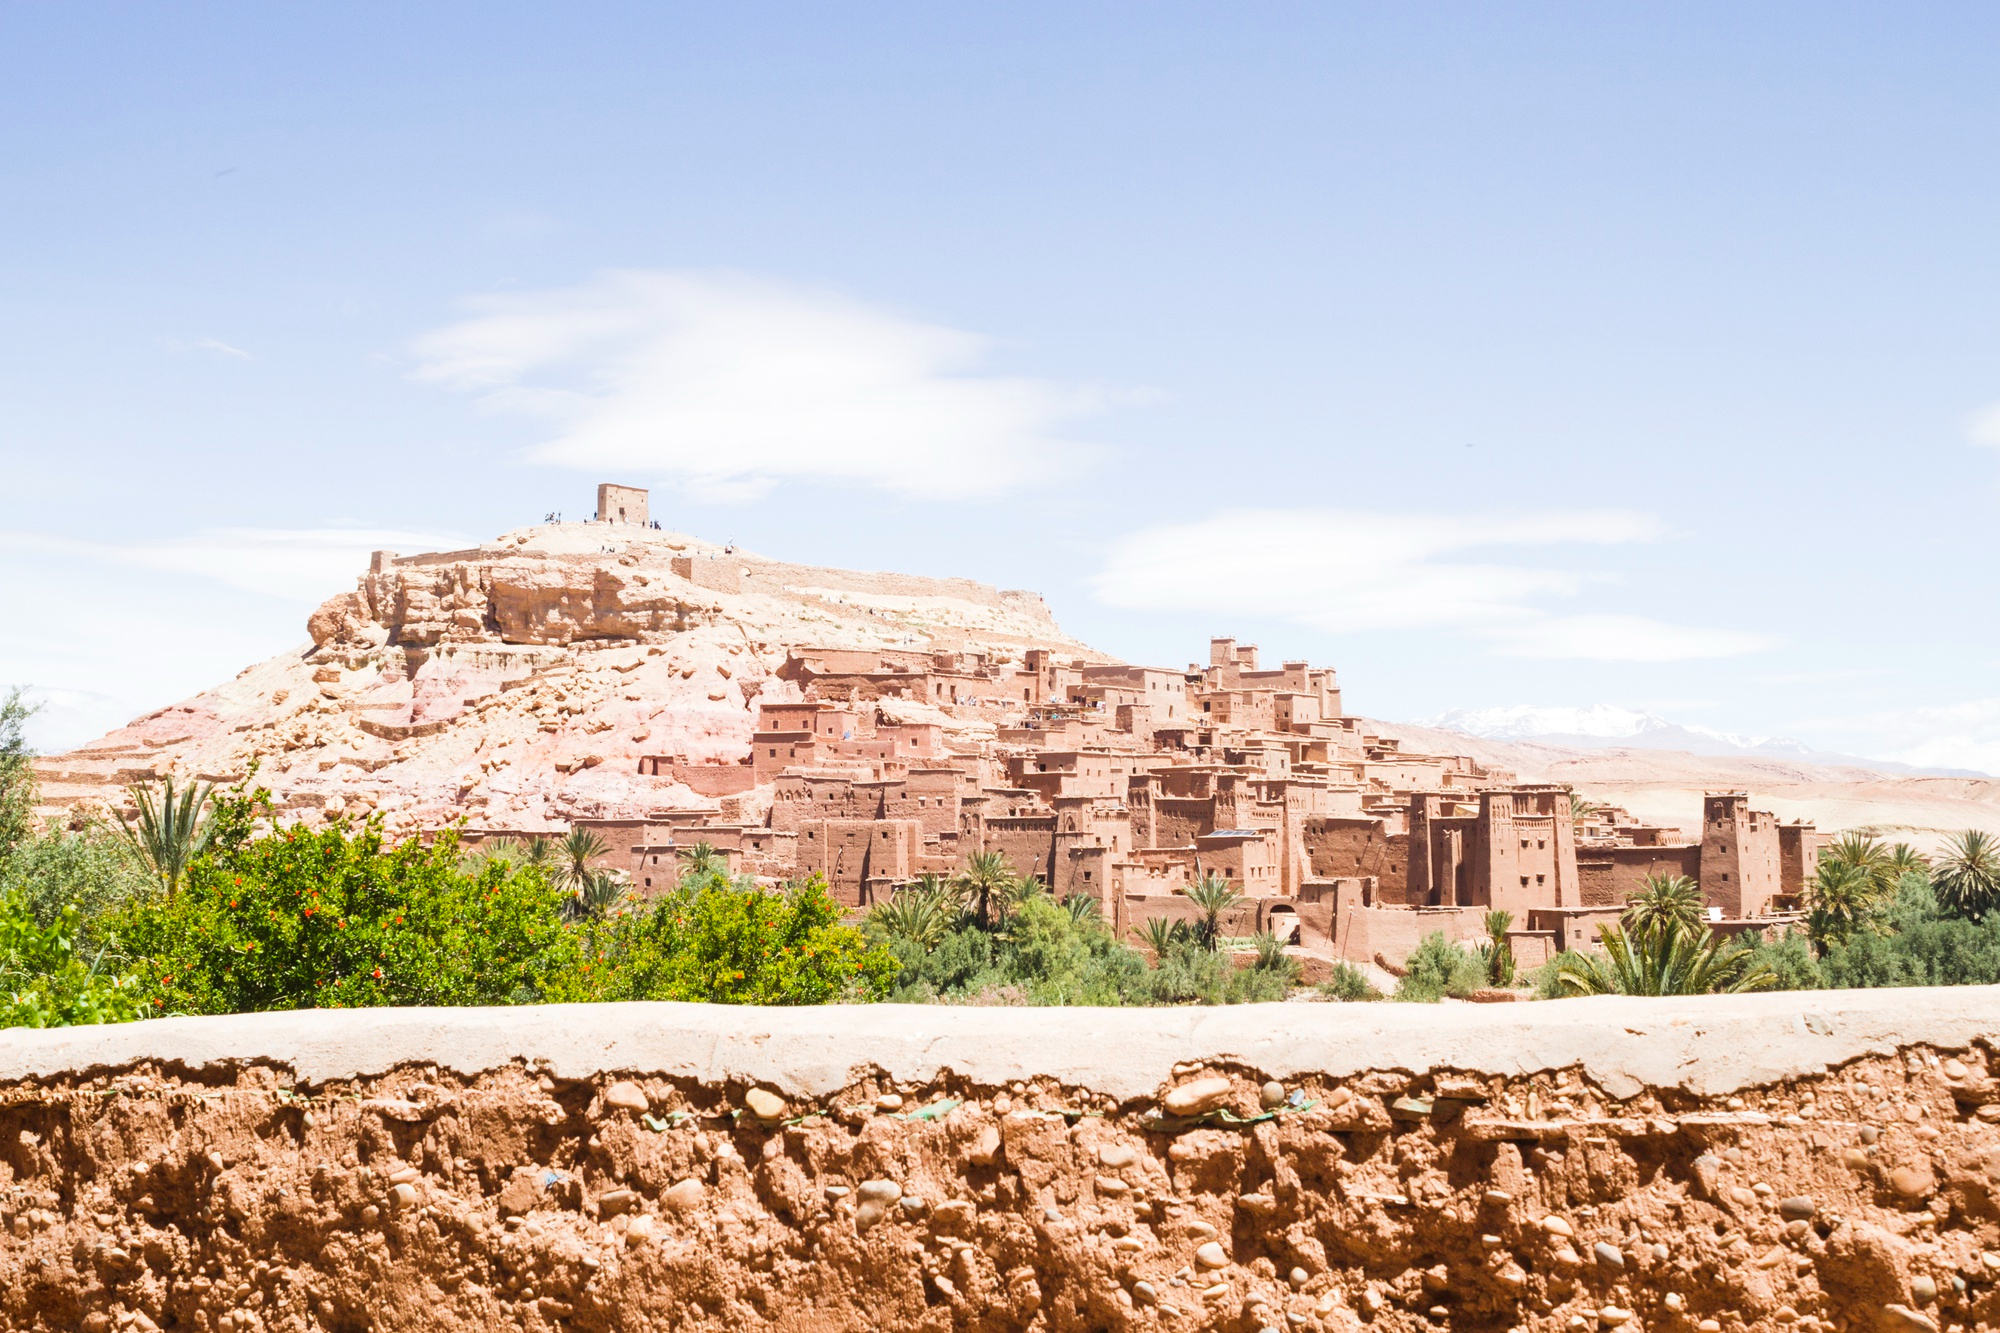 Découvrez le riche paysage linguistique du Maroc avec l'Amazigh, l'Arabe et le Français. Explorez Essaouira, l'artisanat marocain et les monnaies du Maroc.